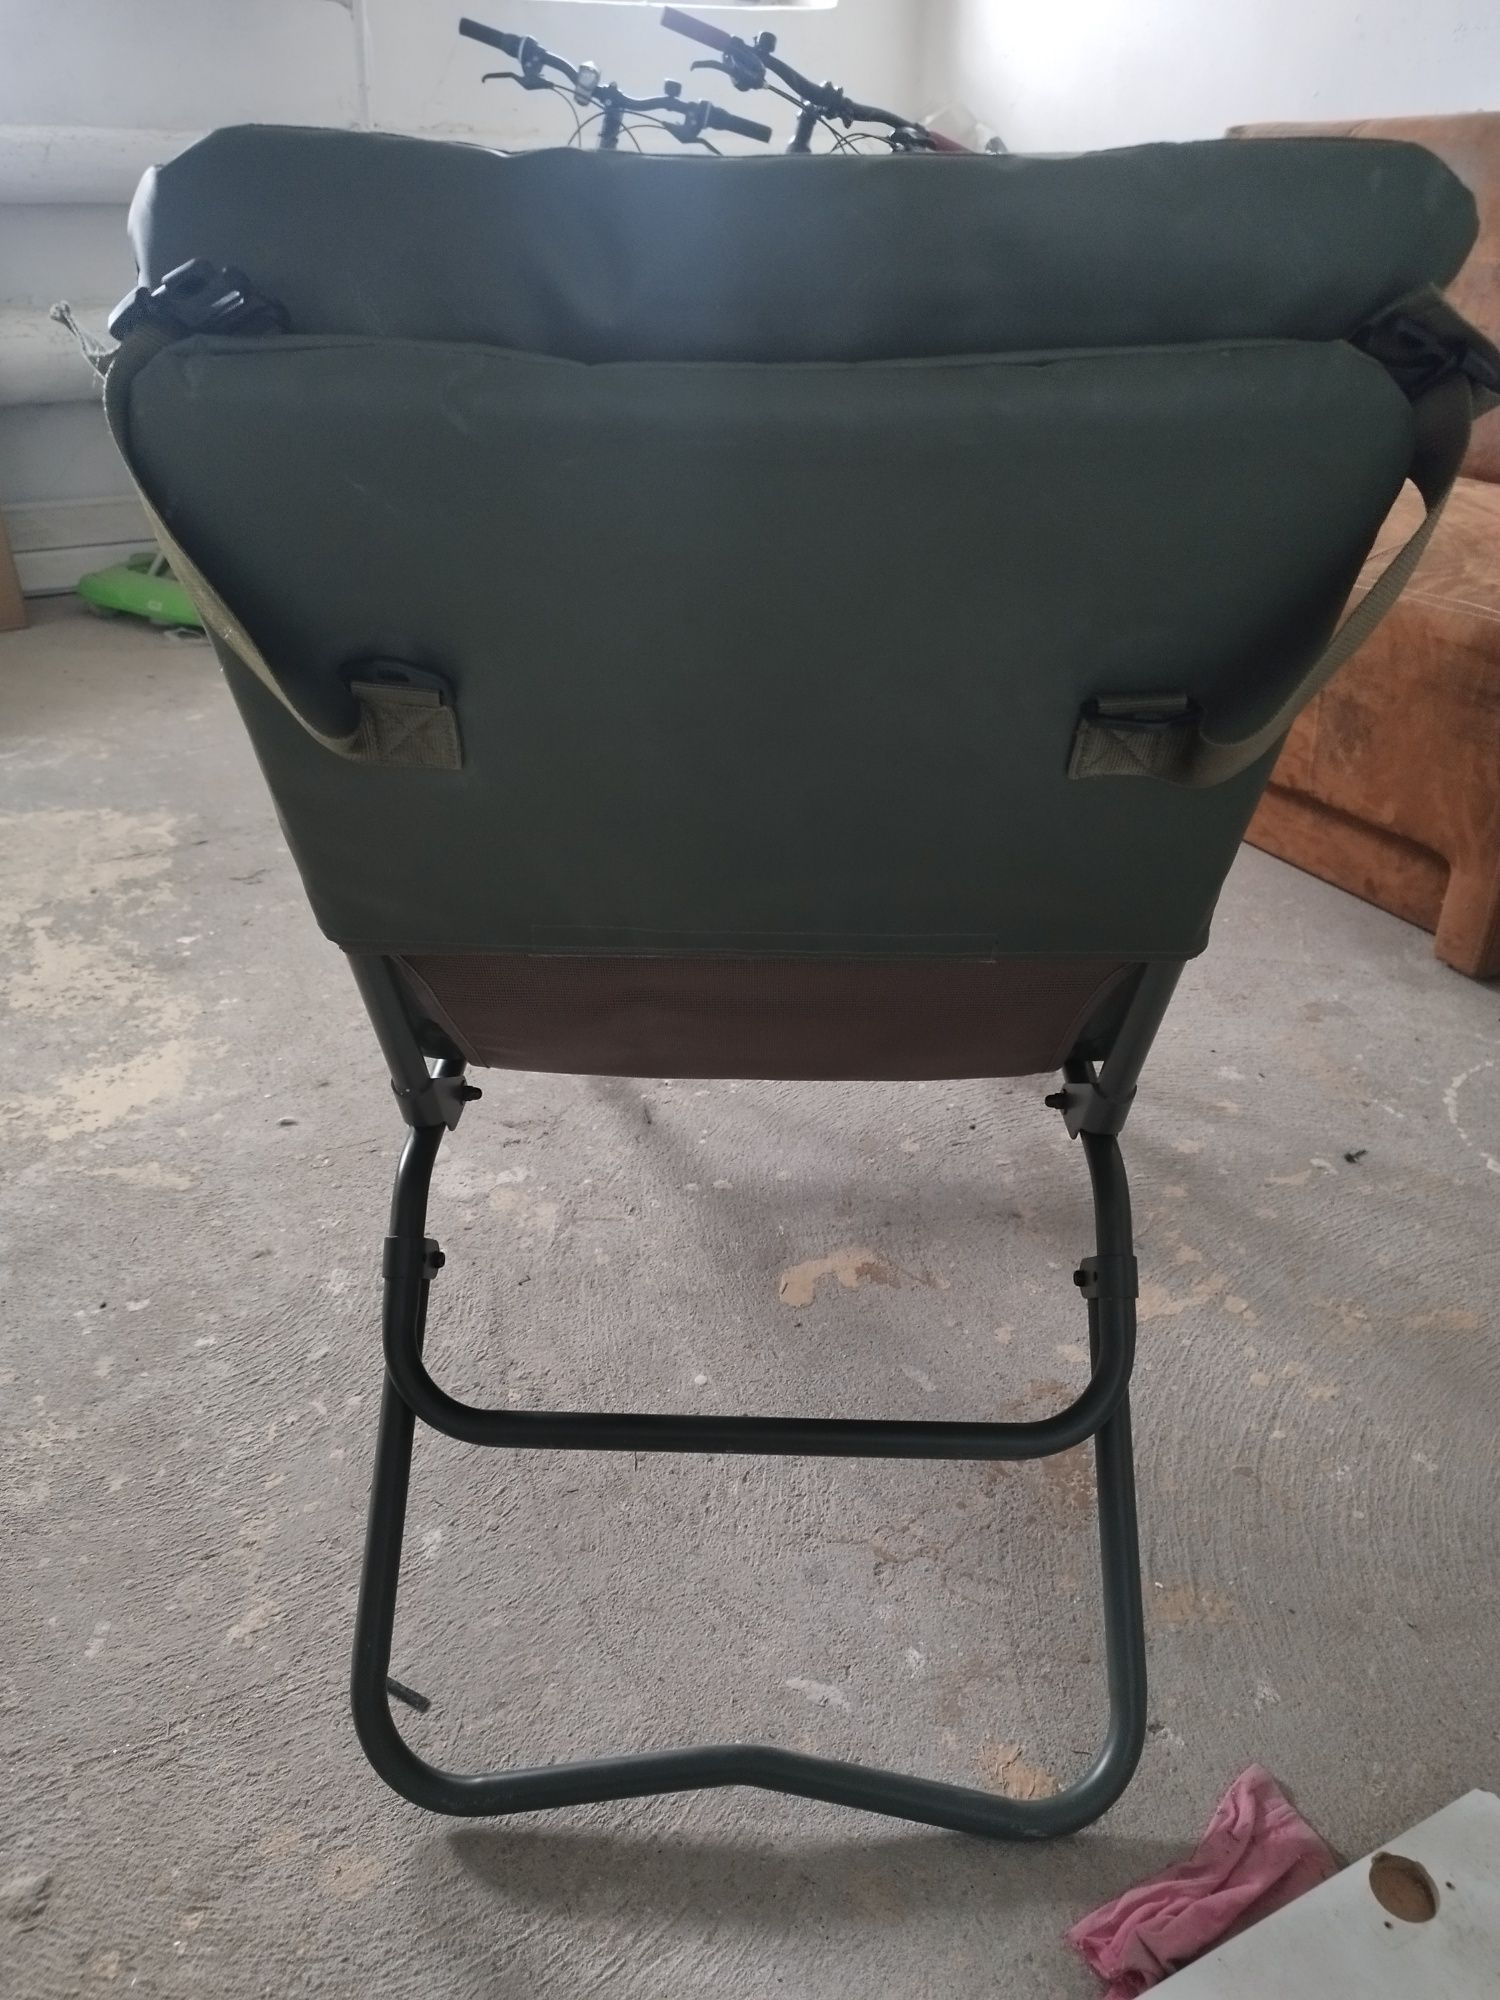 Trakker RLX Combi Chair (Nash,Fox, Daiwa, Jrc, Chub)